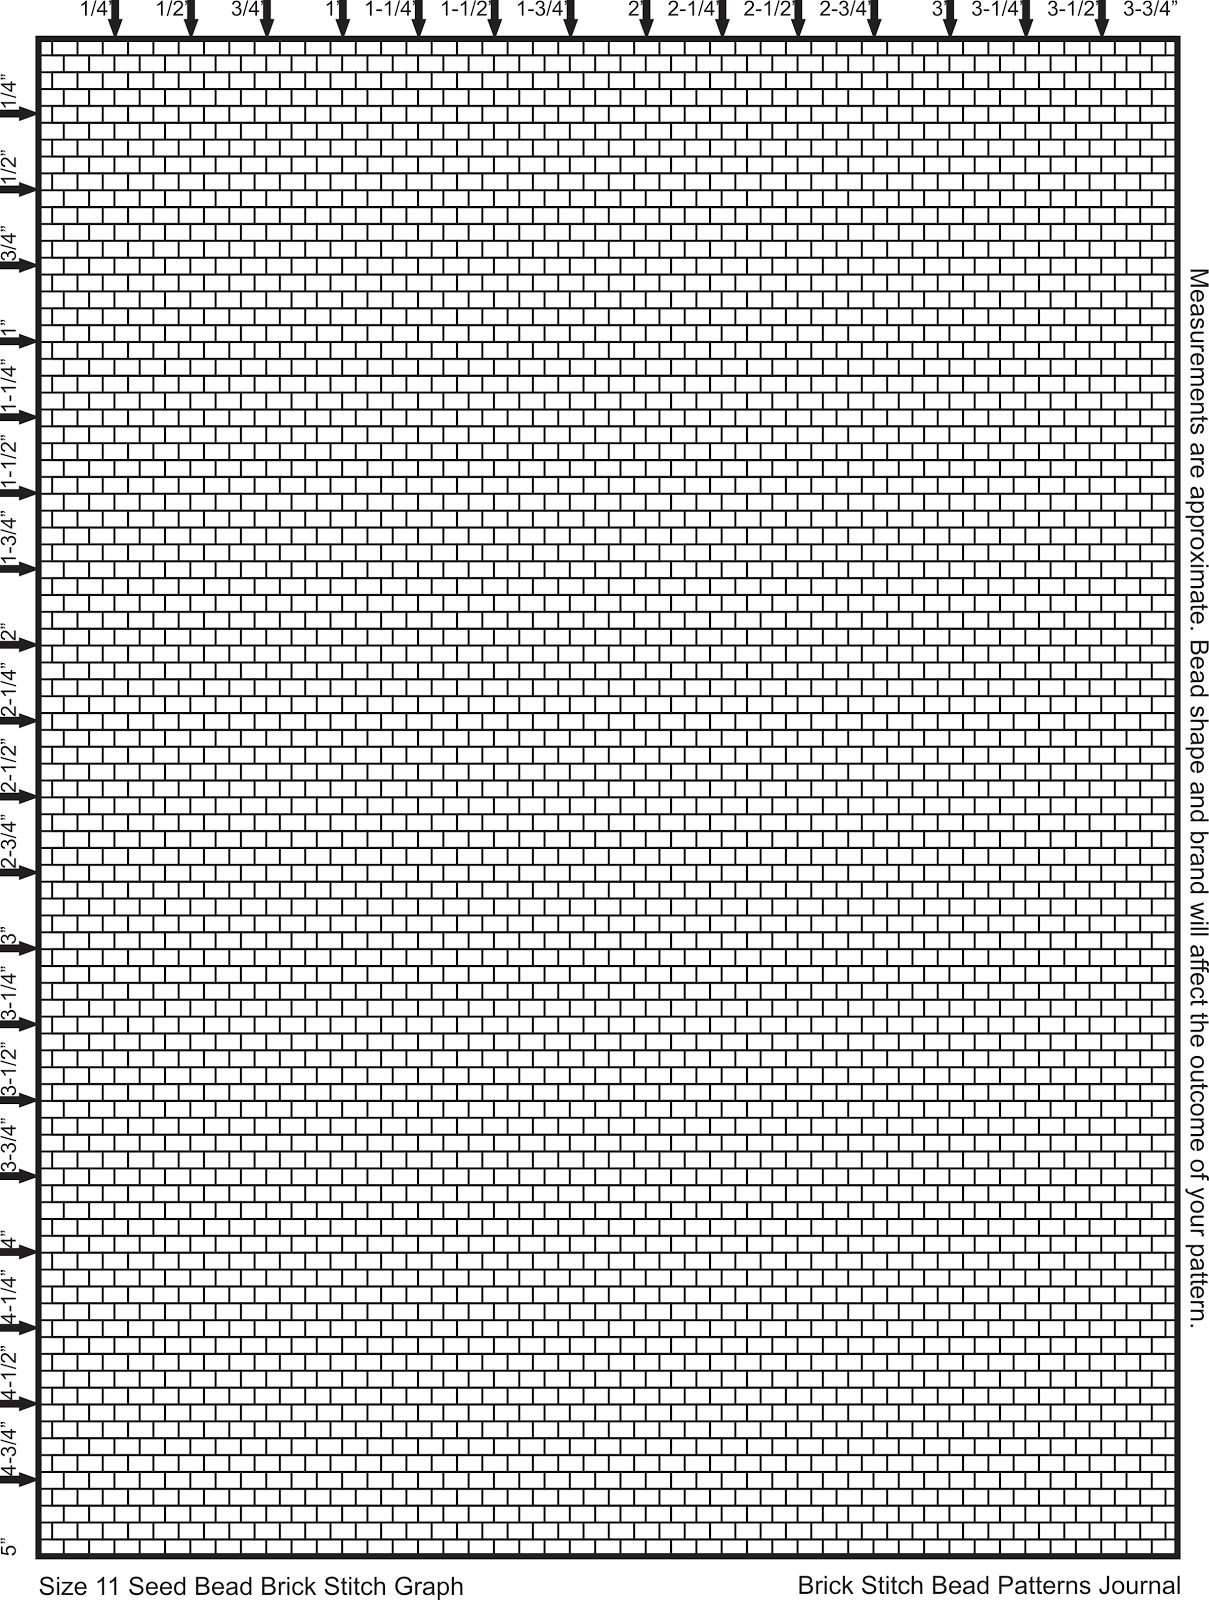 Brick Stitch Bead Patterns Journal Size 11 Seed Bead Brick Stitch